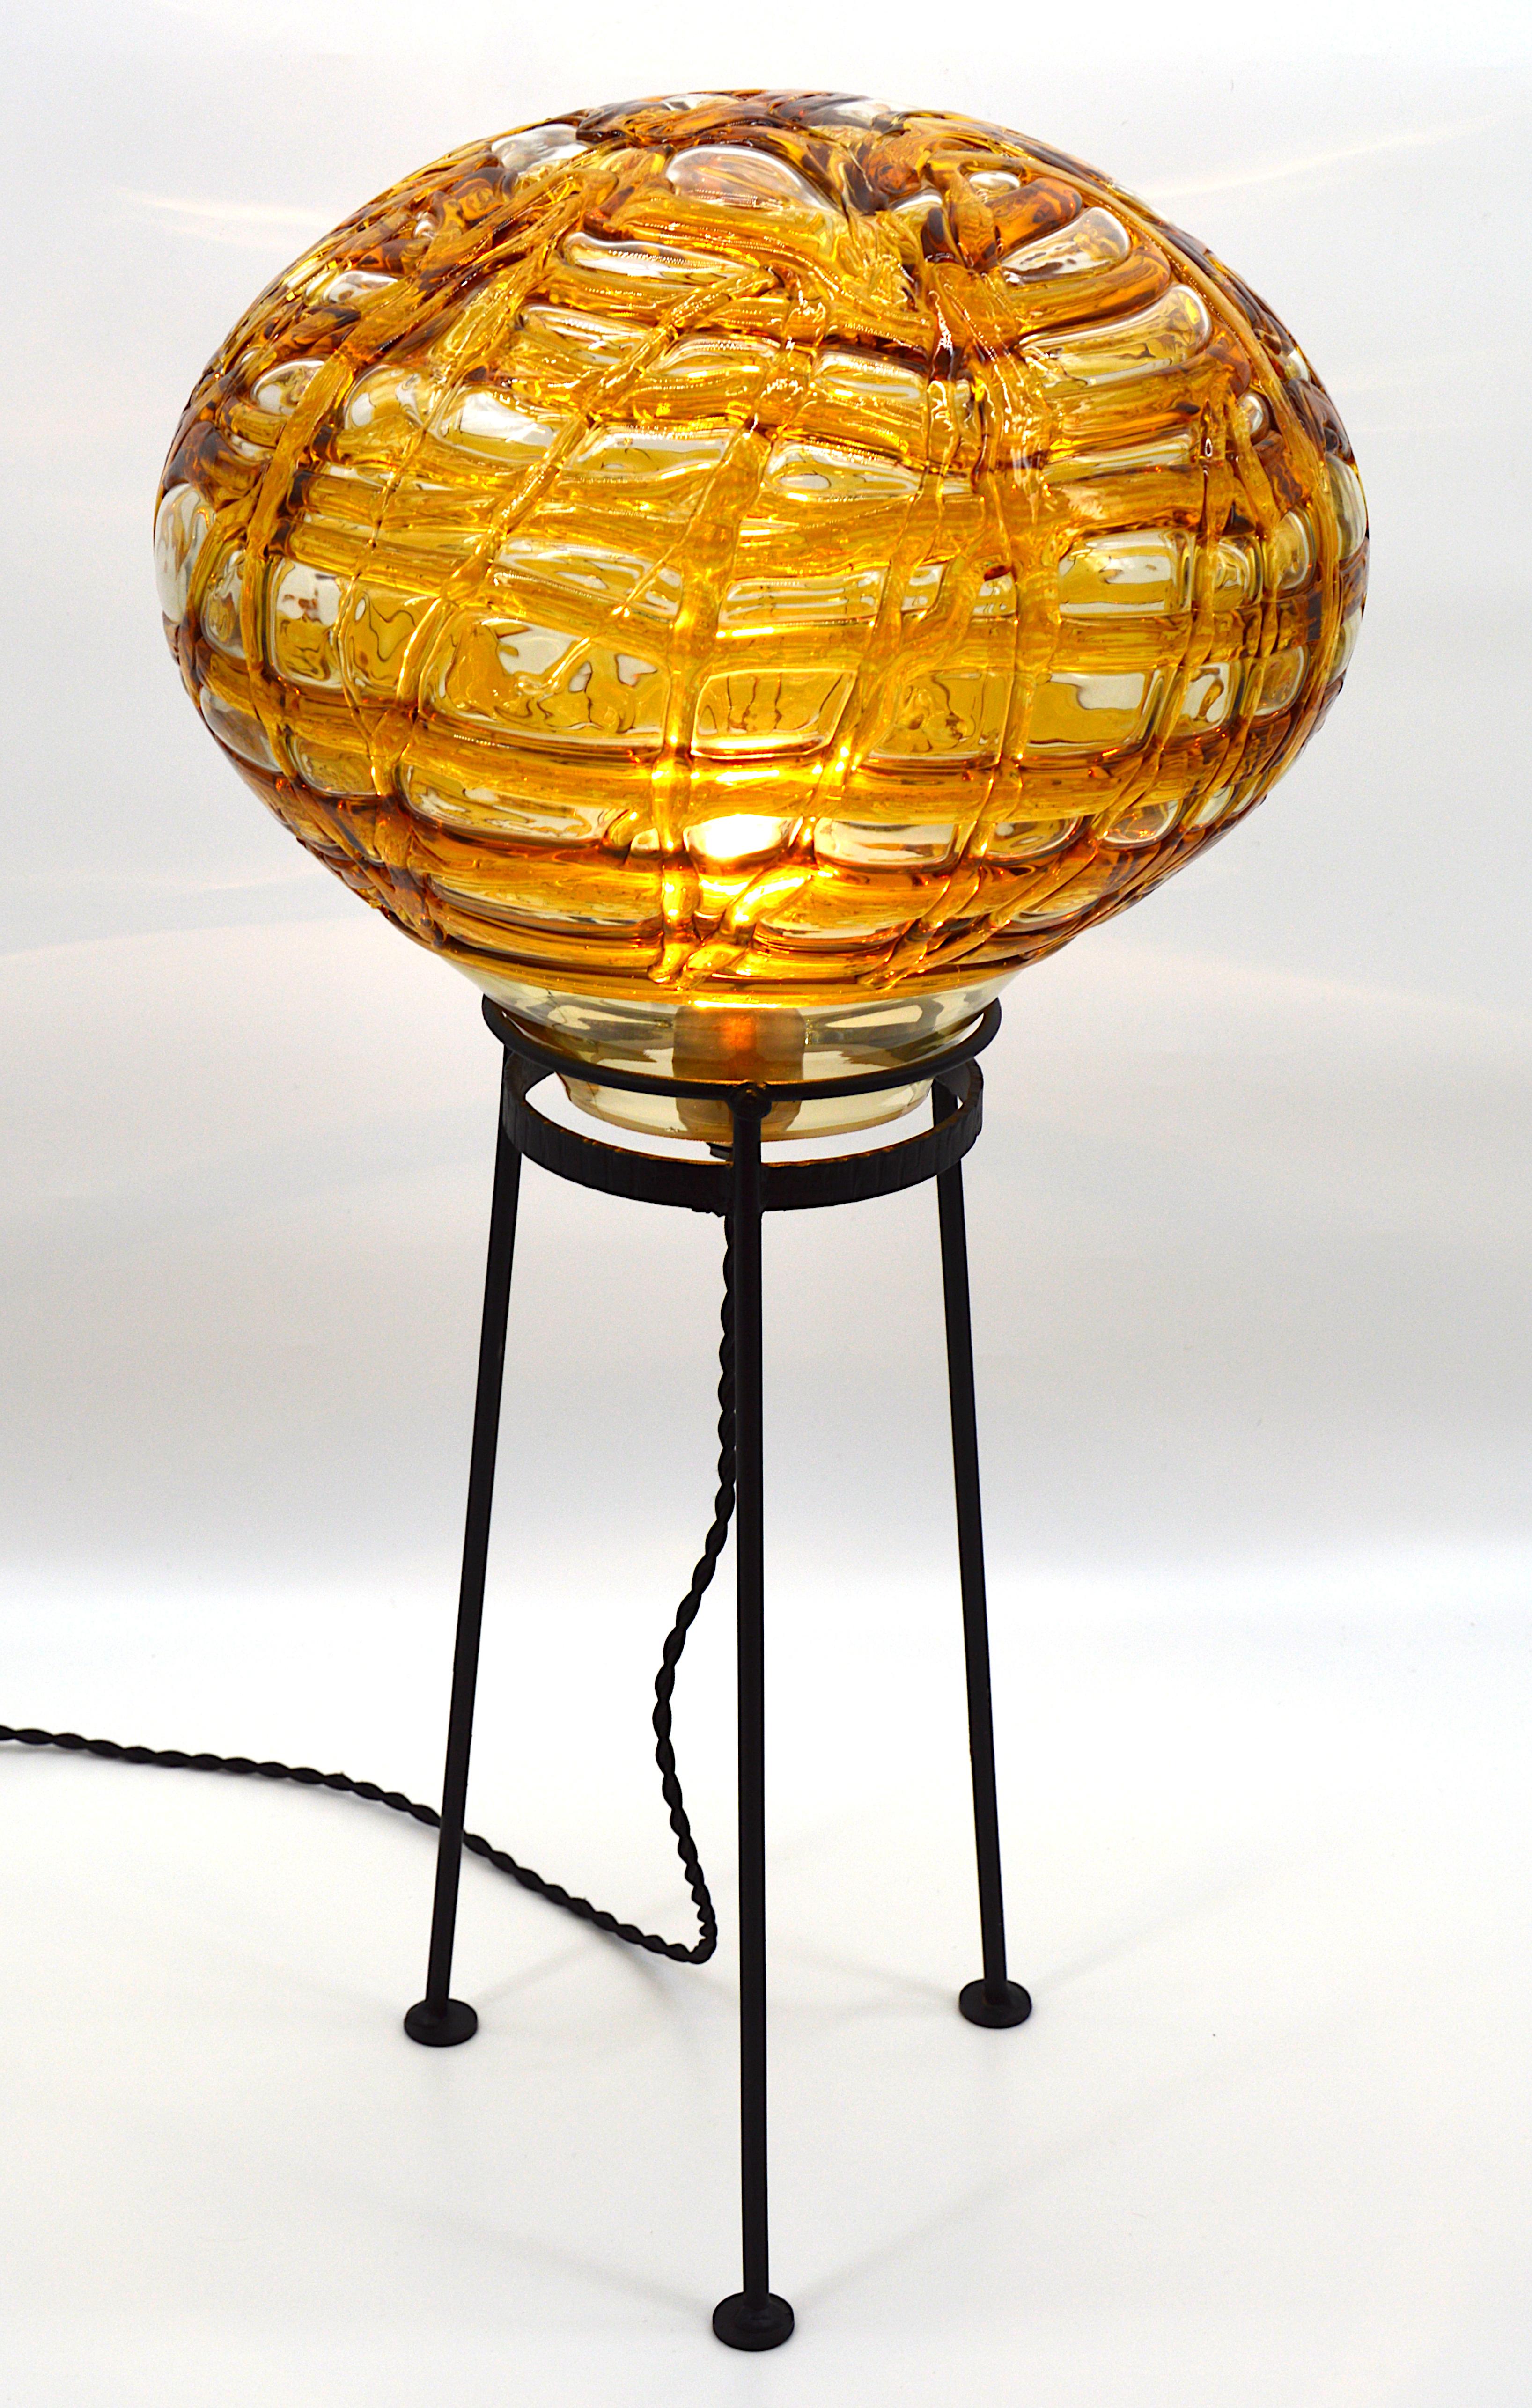 Lampadaire du milieu du siècle par Doria, Allemagne, années 1960. Ce magnifique lampadaire a été produit au milieu des années 1960 du siècle dernier par Doria Leuchten. À cette époque, Doria Leuchten était l'un des fabricants d'objets lumineux les